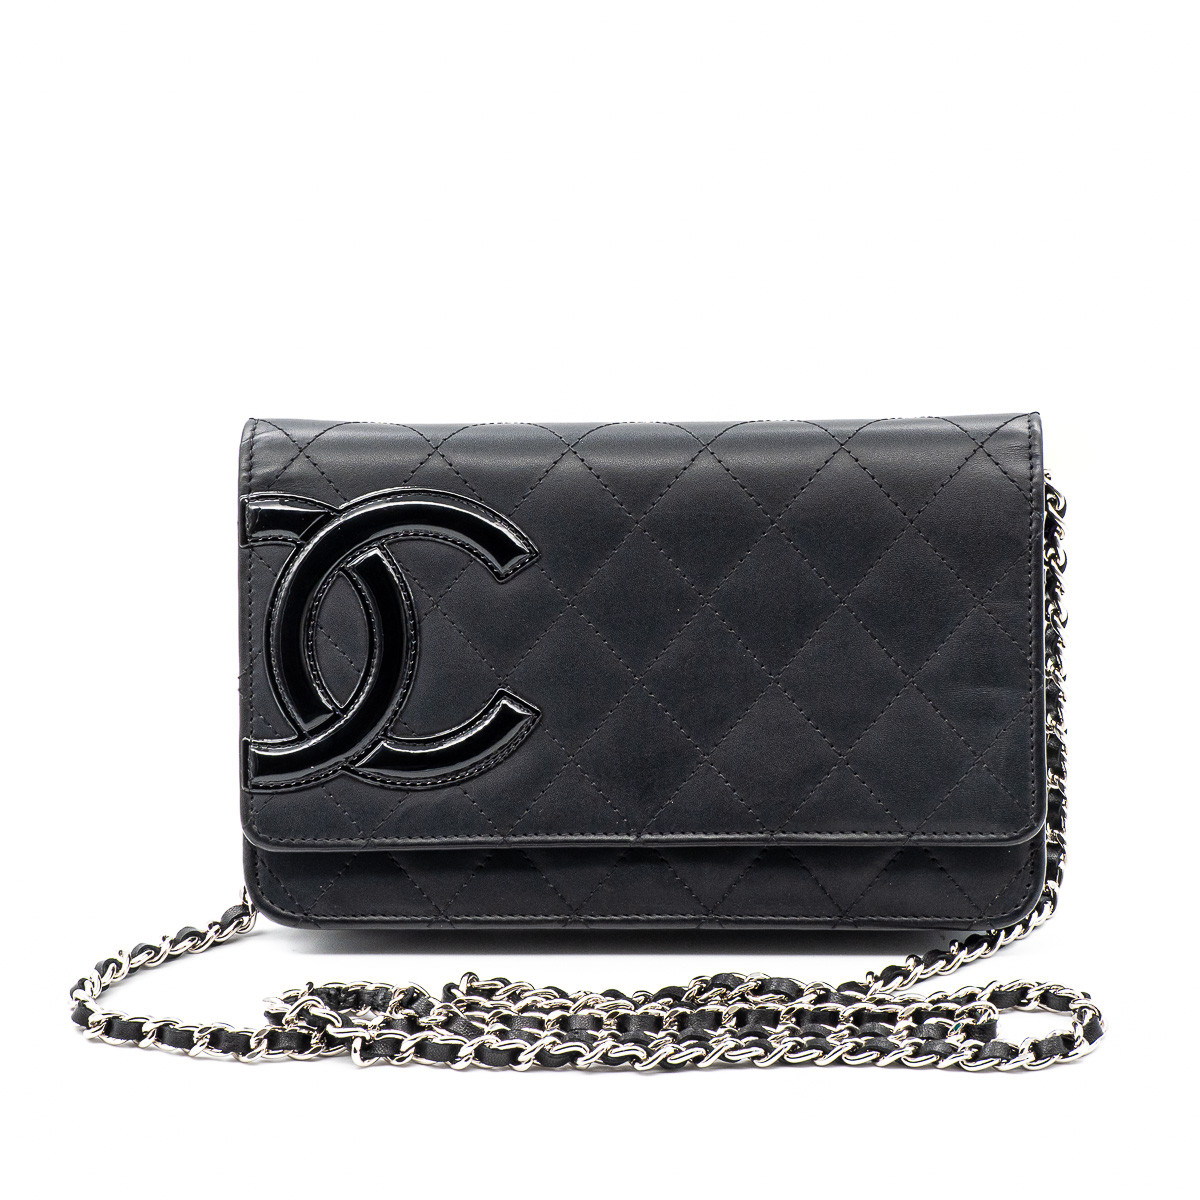 Sacs Wallet on Chain Cambon en cuir noir Chanel et d'occasion